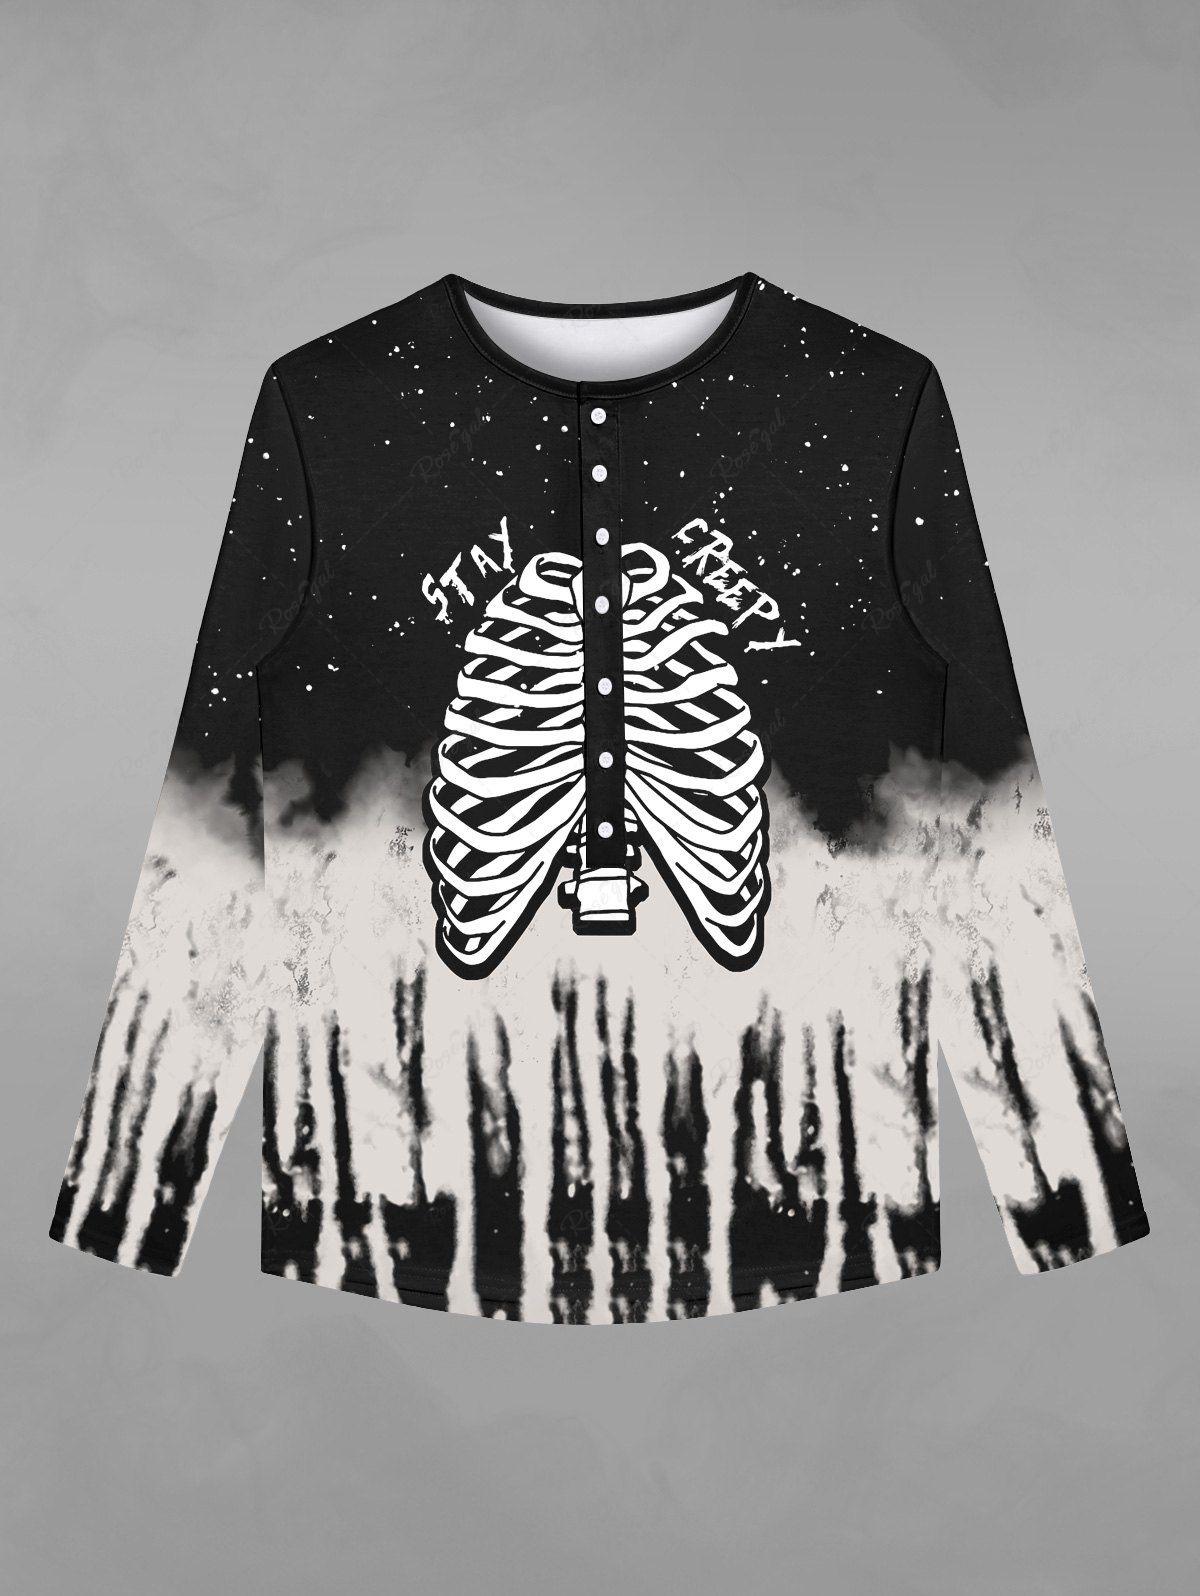 T-shirt D'Halloween Déchiré Gothique Squelette Galaxie Imprimés avec Boutons Noir XL